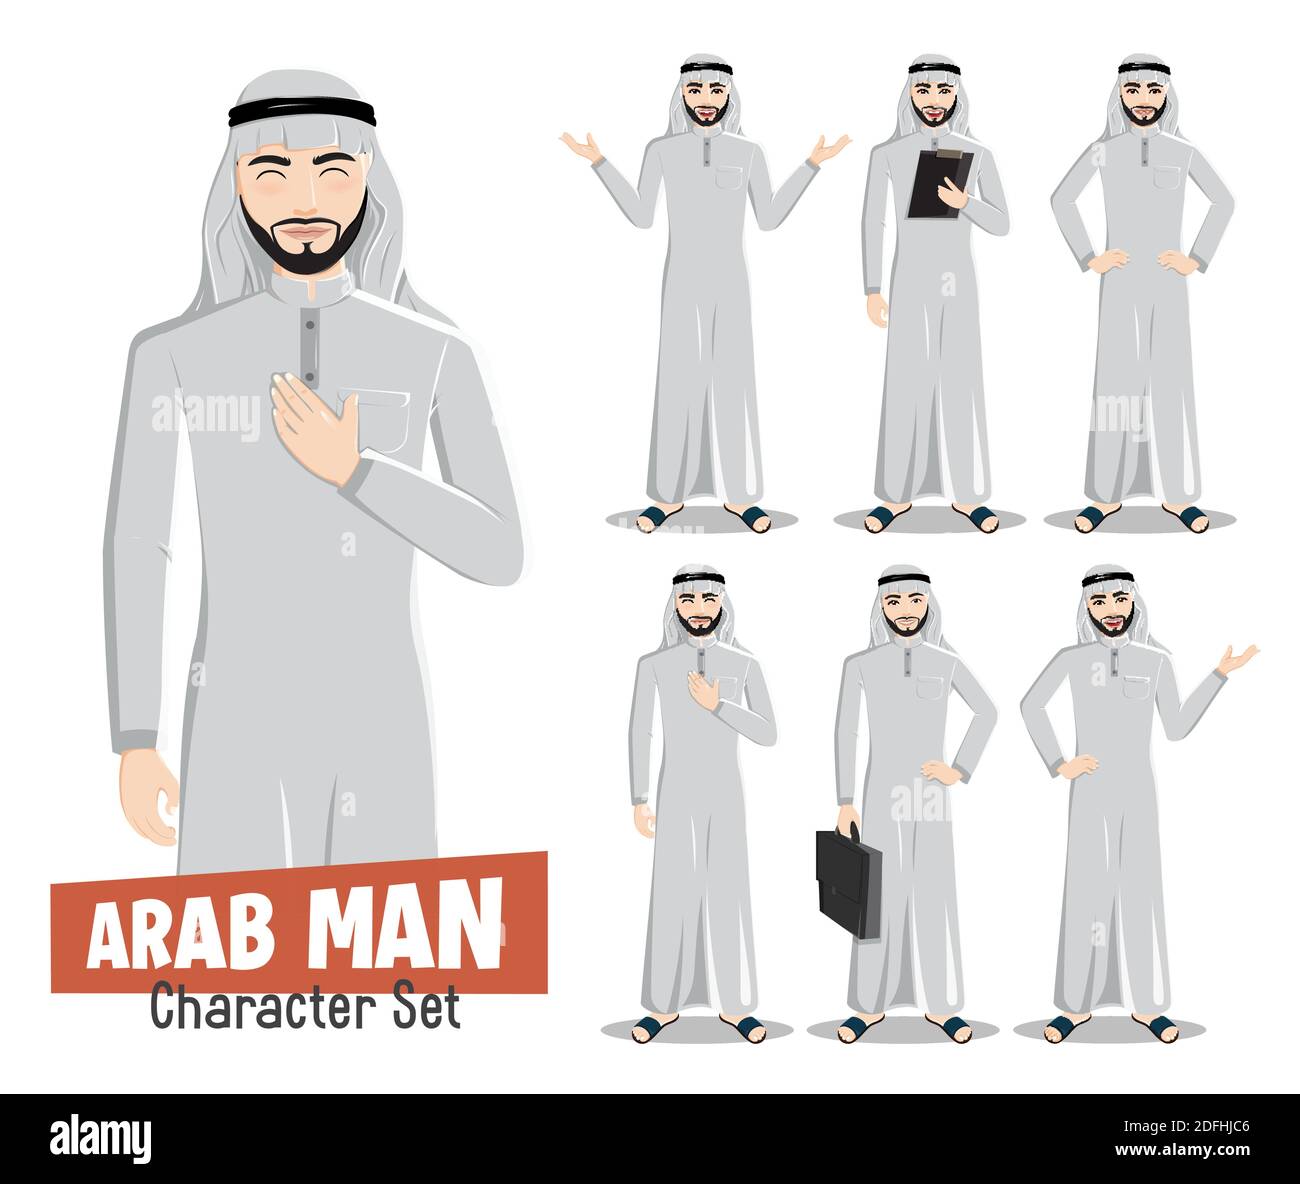 Arab man Vektor Zeichen gesetzt. Arabisch saudi männlichen Charakter isoliert in weißem Hintergrund mit stehenden Pose und Gesten für Geschäftsmann arabisch. Stock Vektor